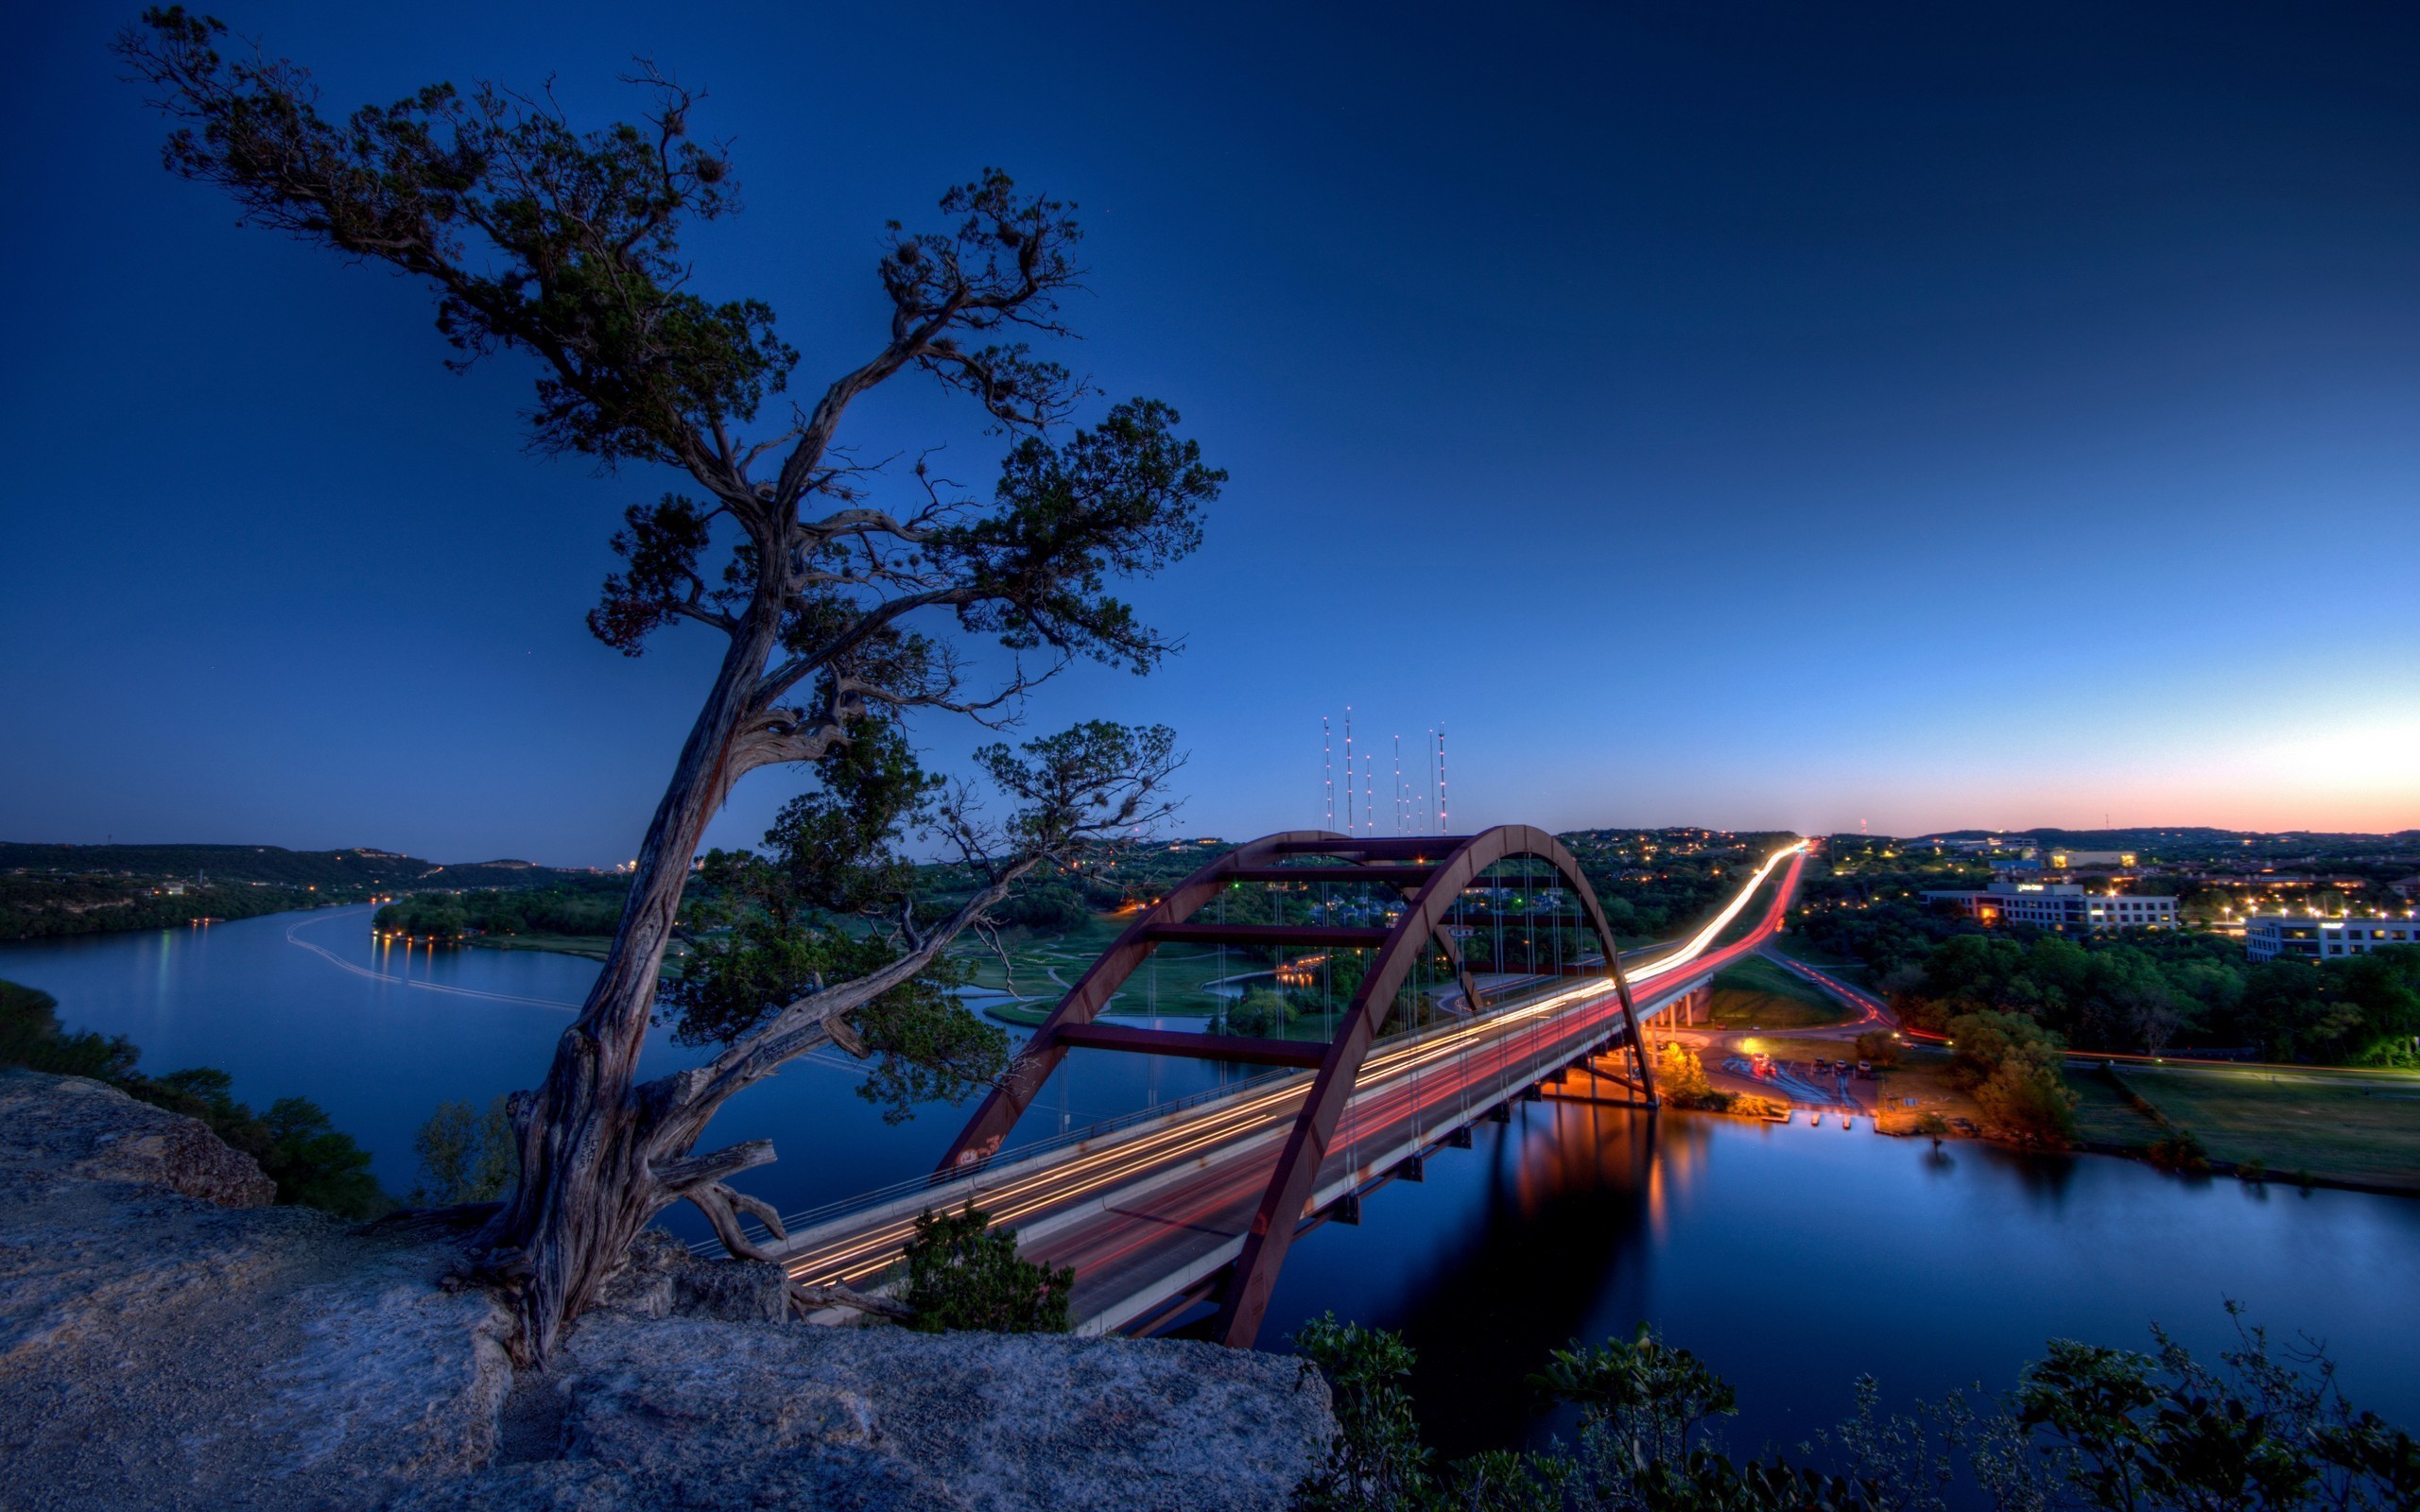 Beautiful Bridges wallpaper free - bridge at dusk ...